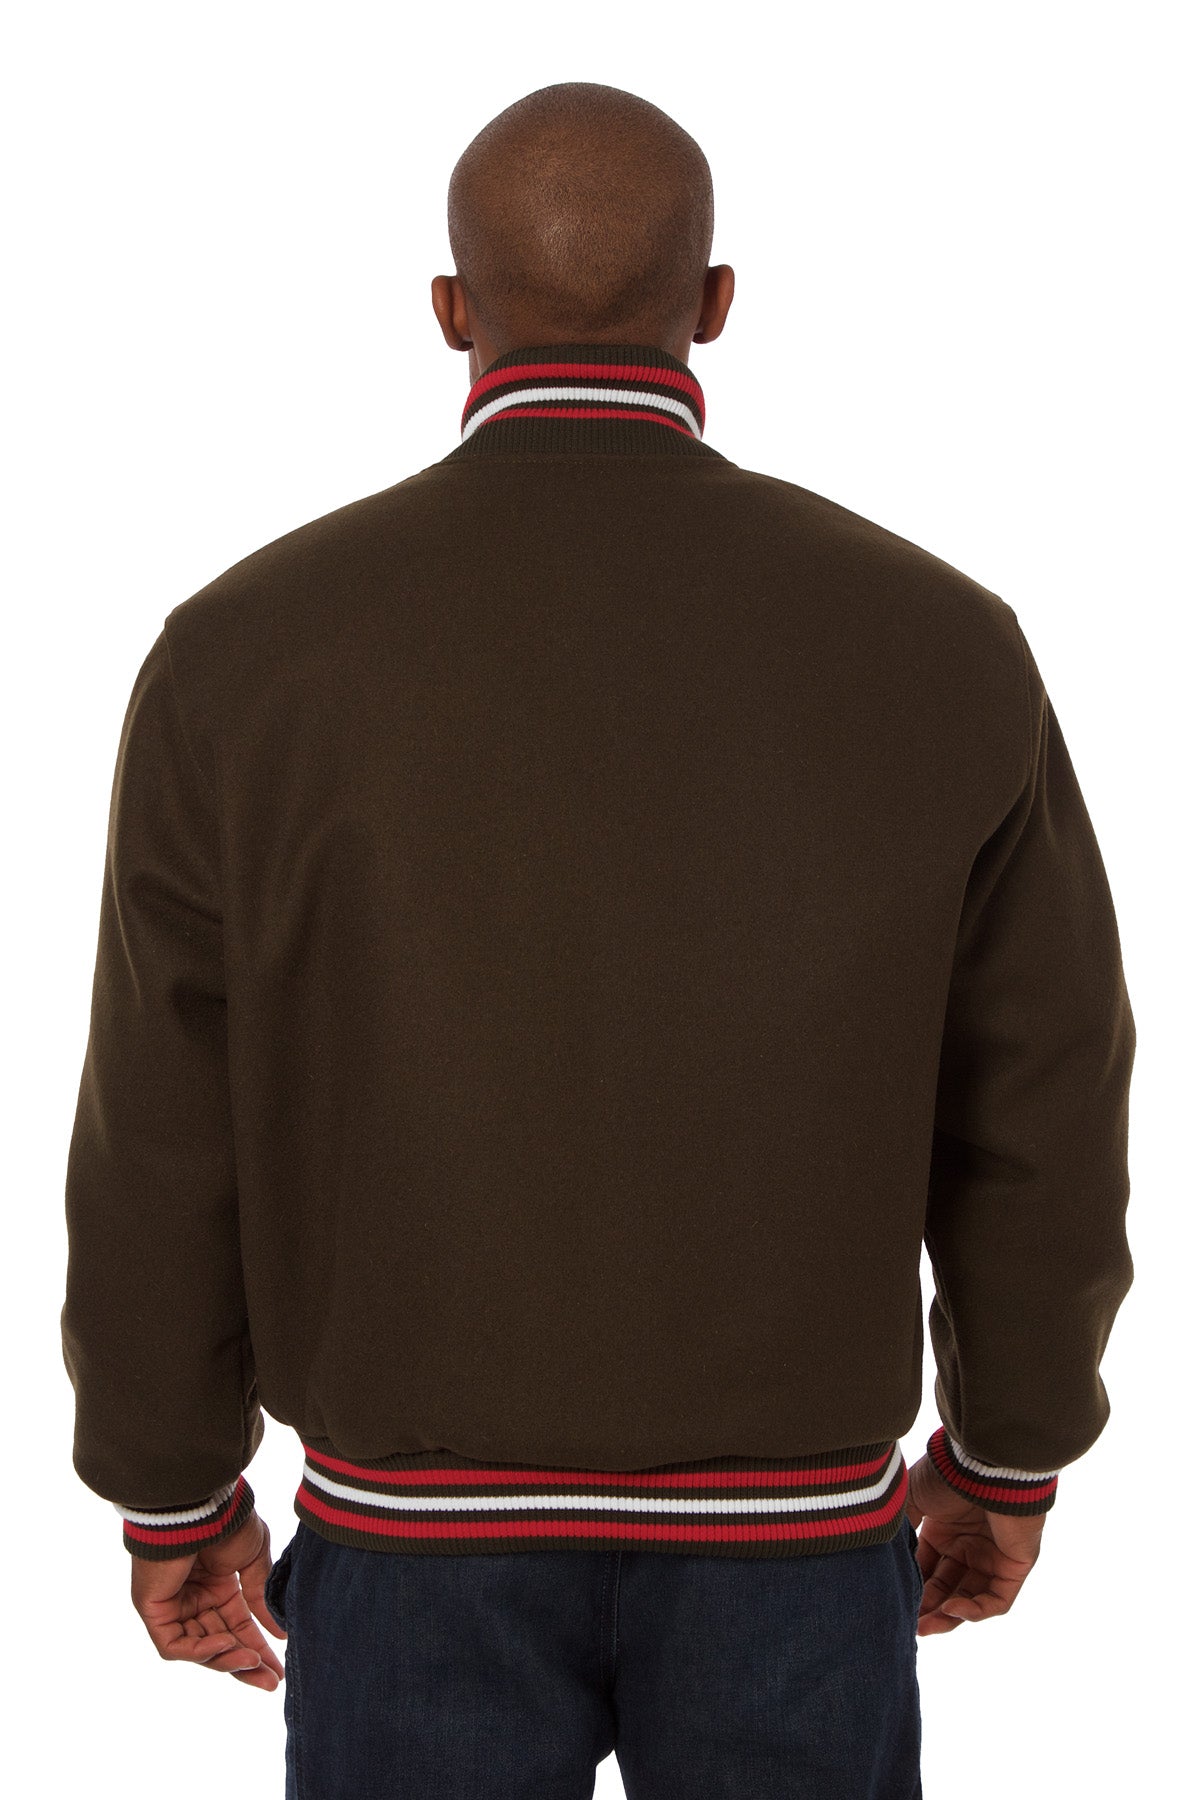 All-Wool Varsity Jacket in Brown